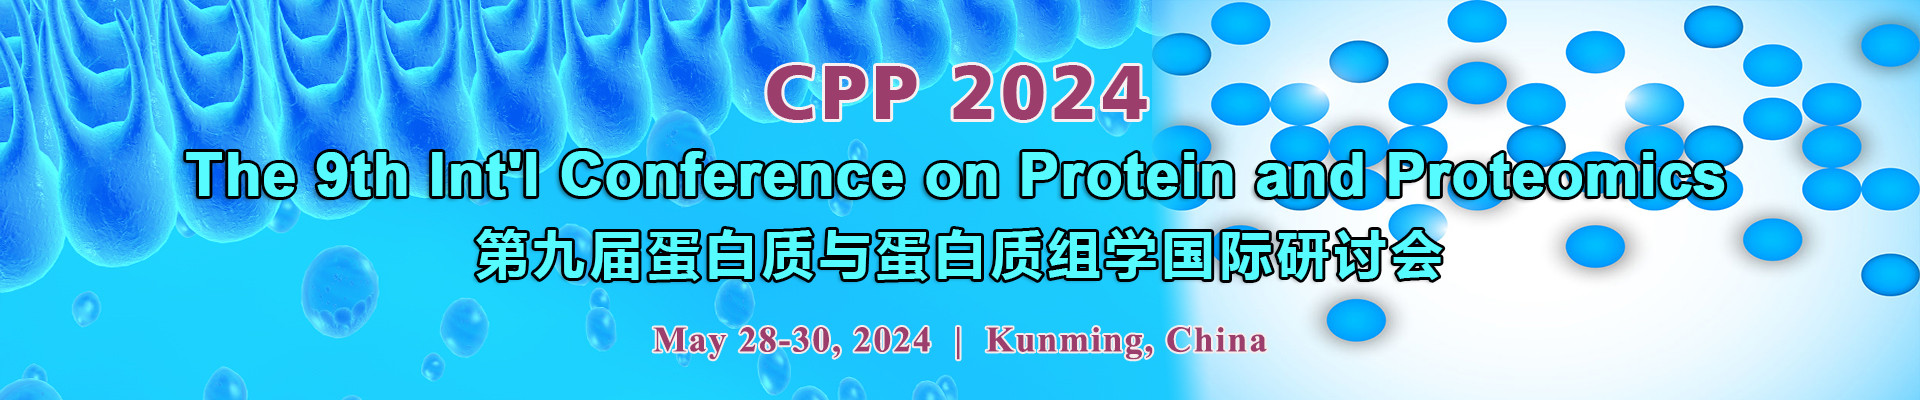 第九届蛋白质与蛋白质组学国际研讨会(CPP 2024)